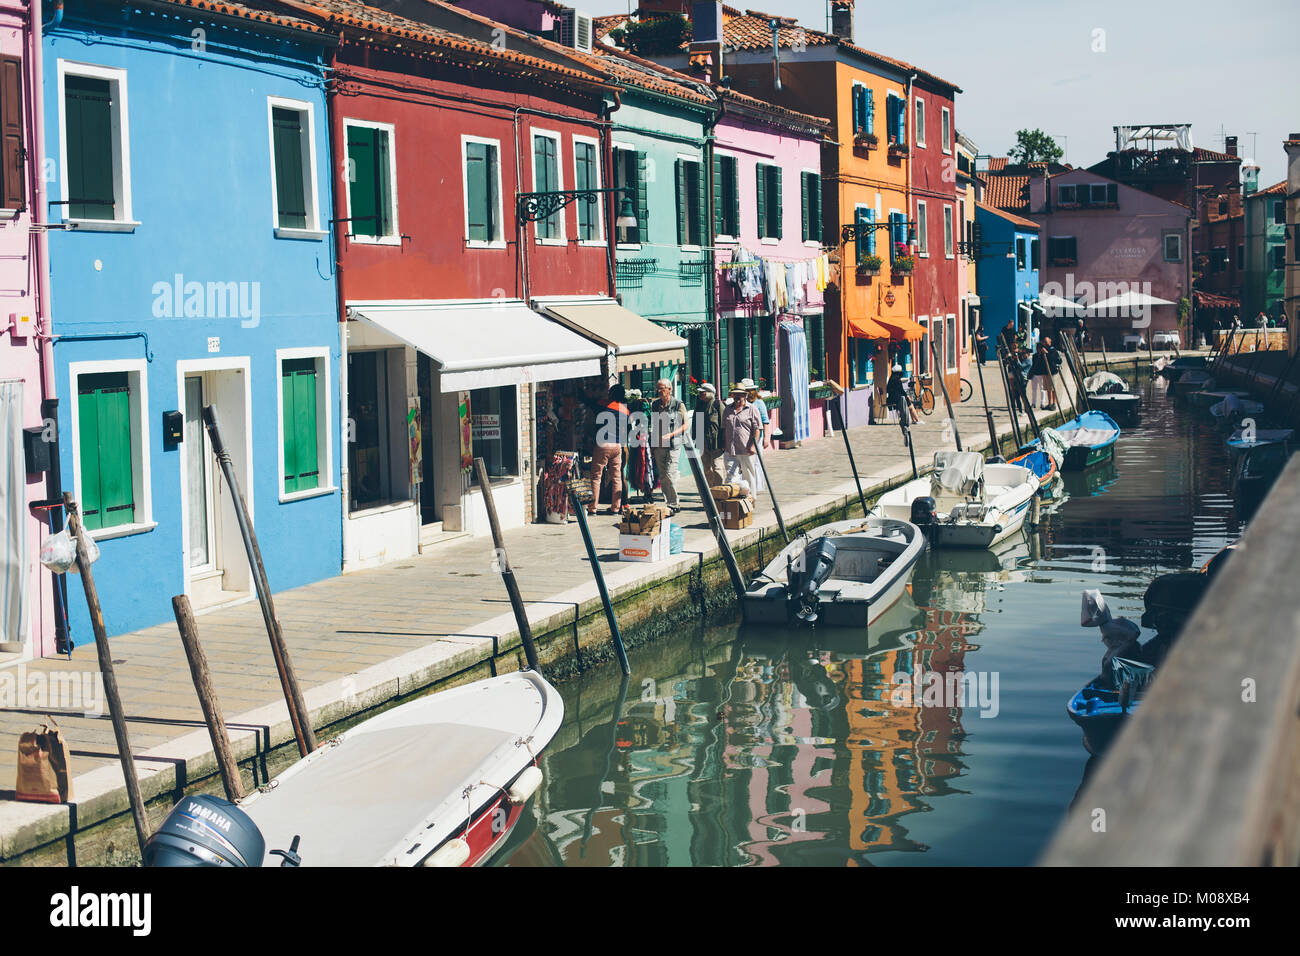 Quasi vuoto canal street con case colorate in bassa stagione in isola di Burano, Venezia. Foto Stock